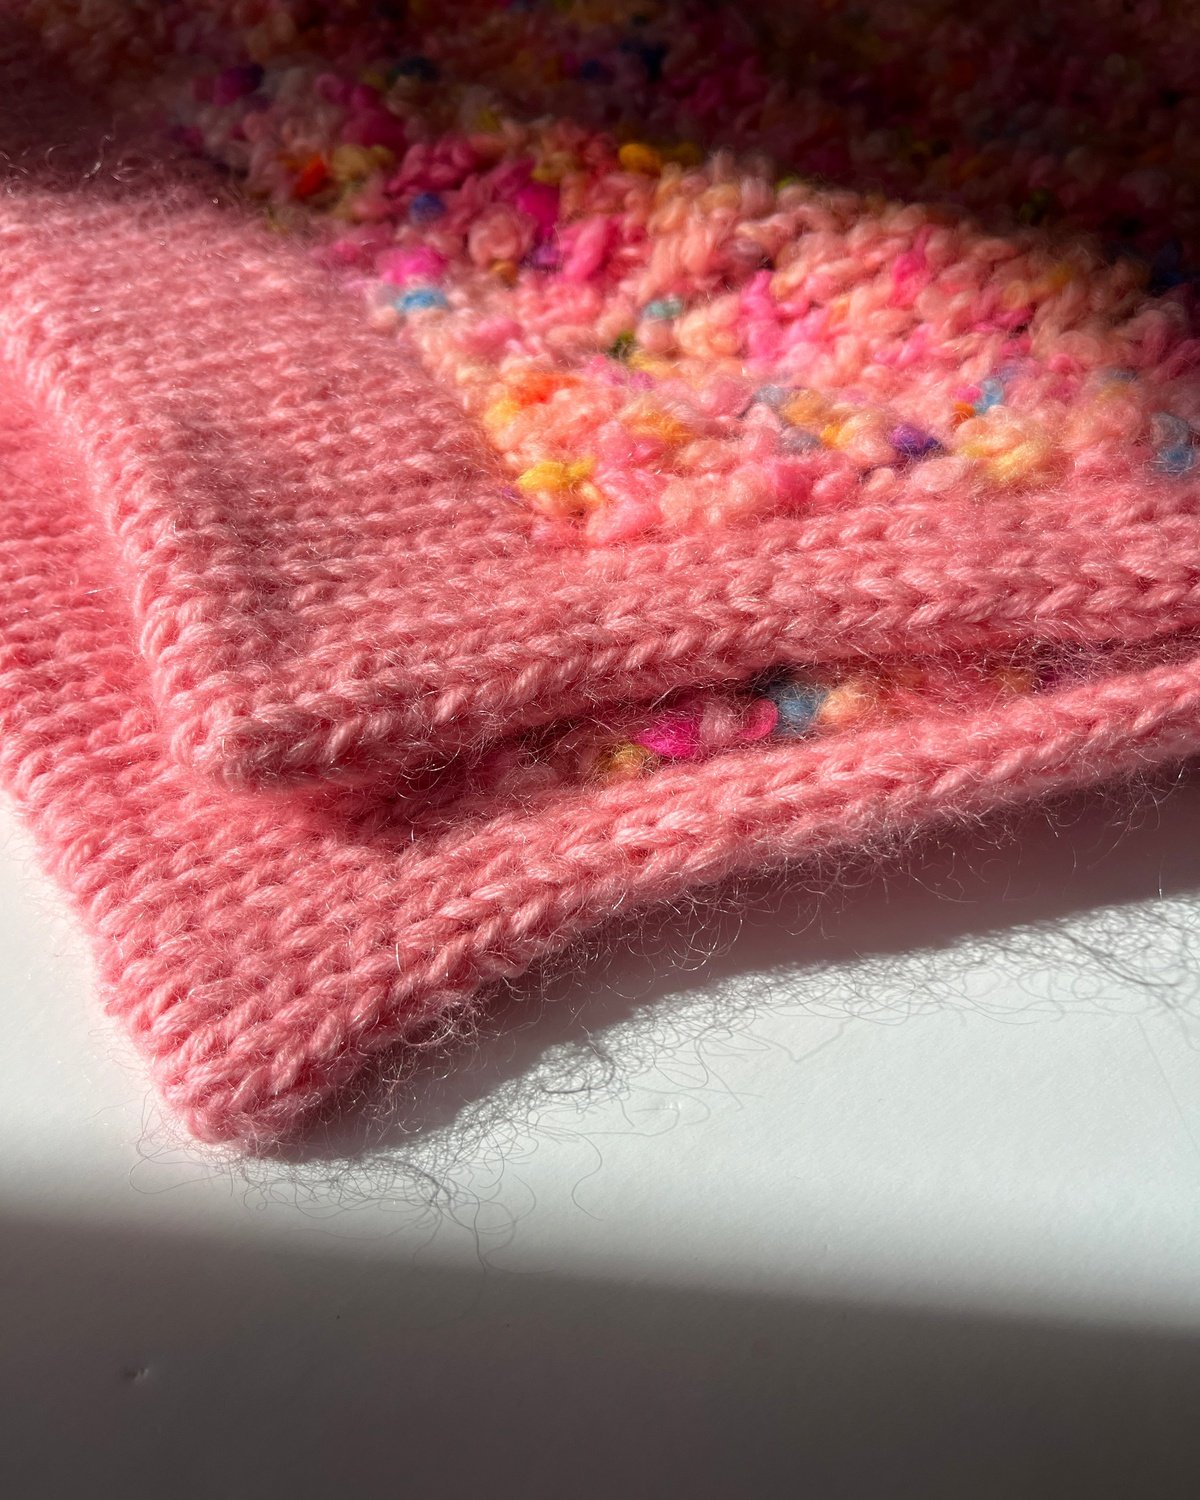 Juicy Sweater English Popknit knitting pattern